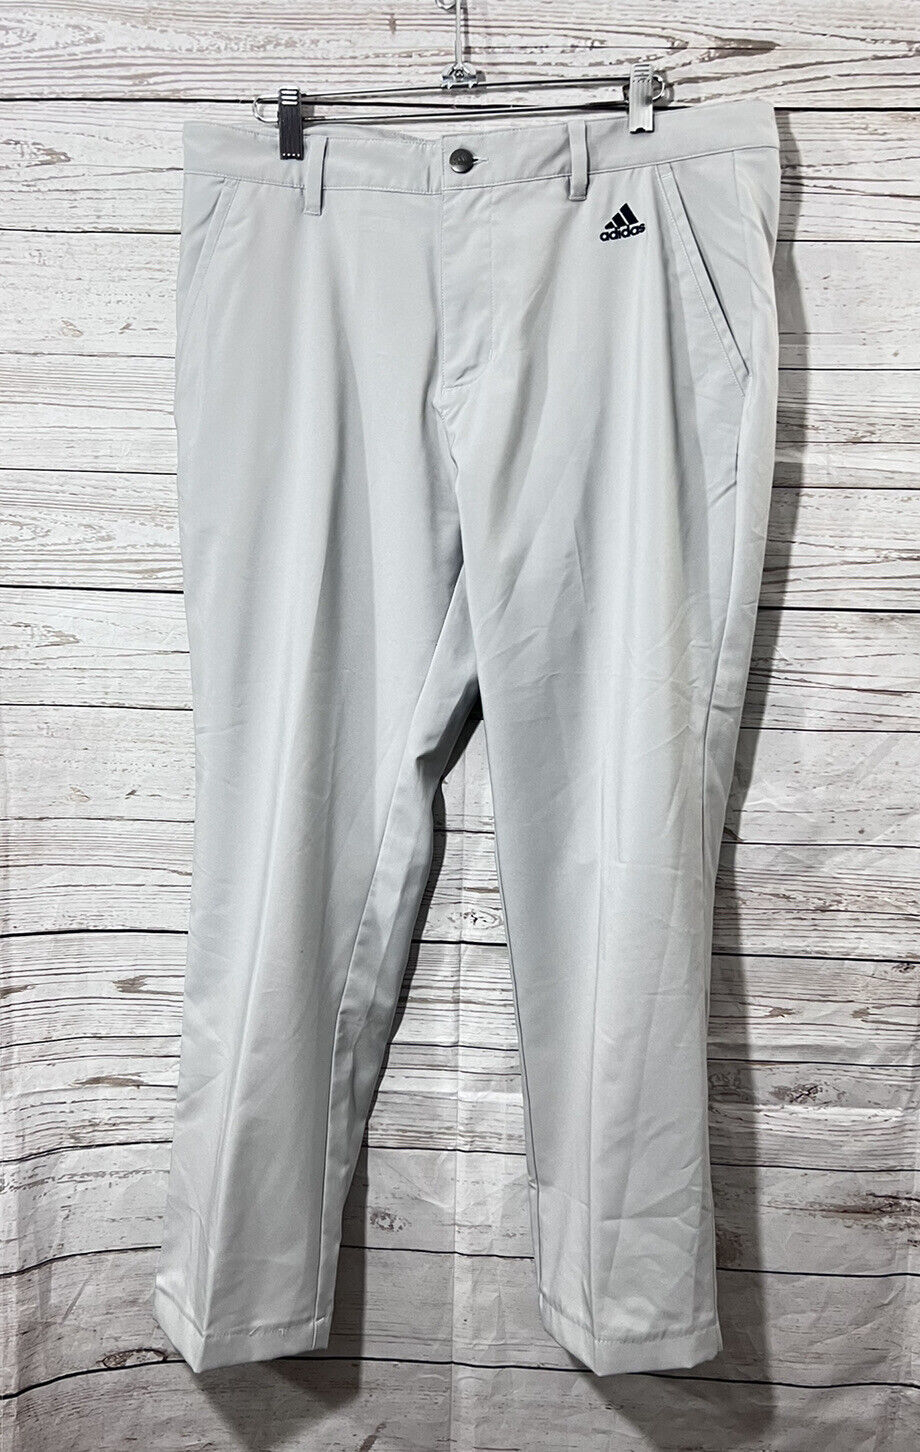 Adidas Men’s 3 Stripe Golf Pants Gray Size 34